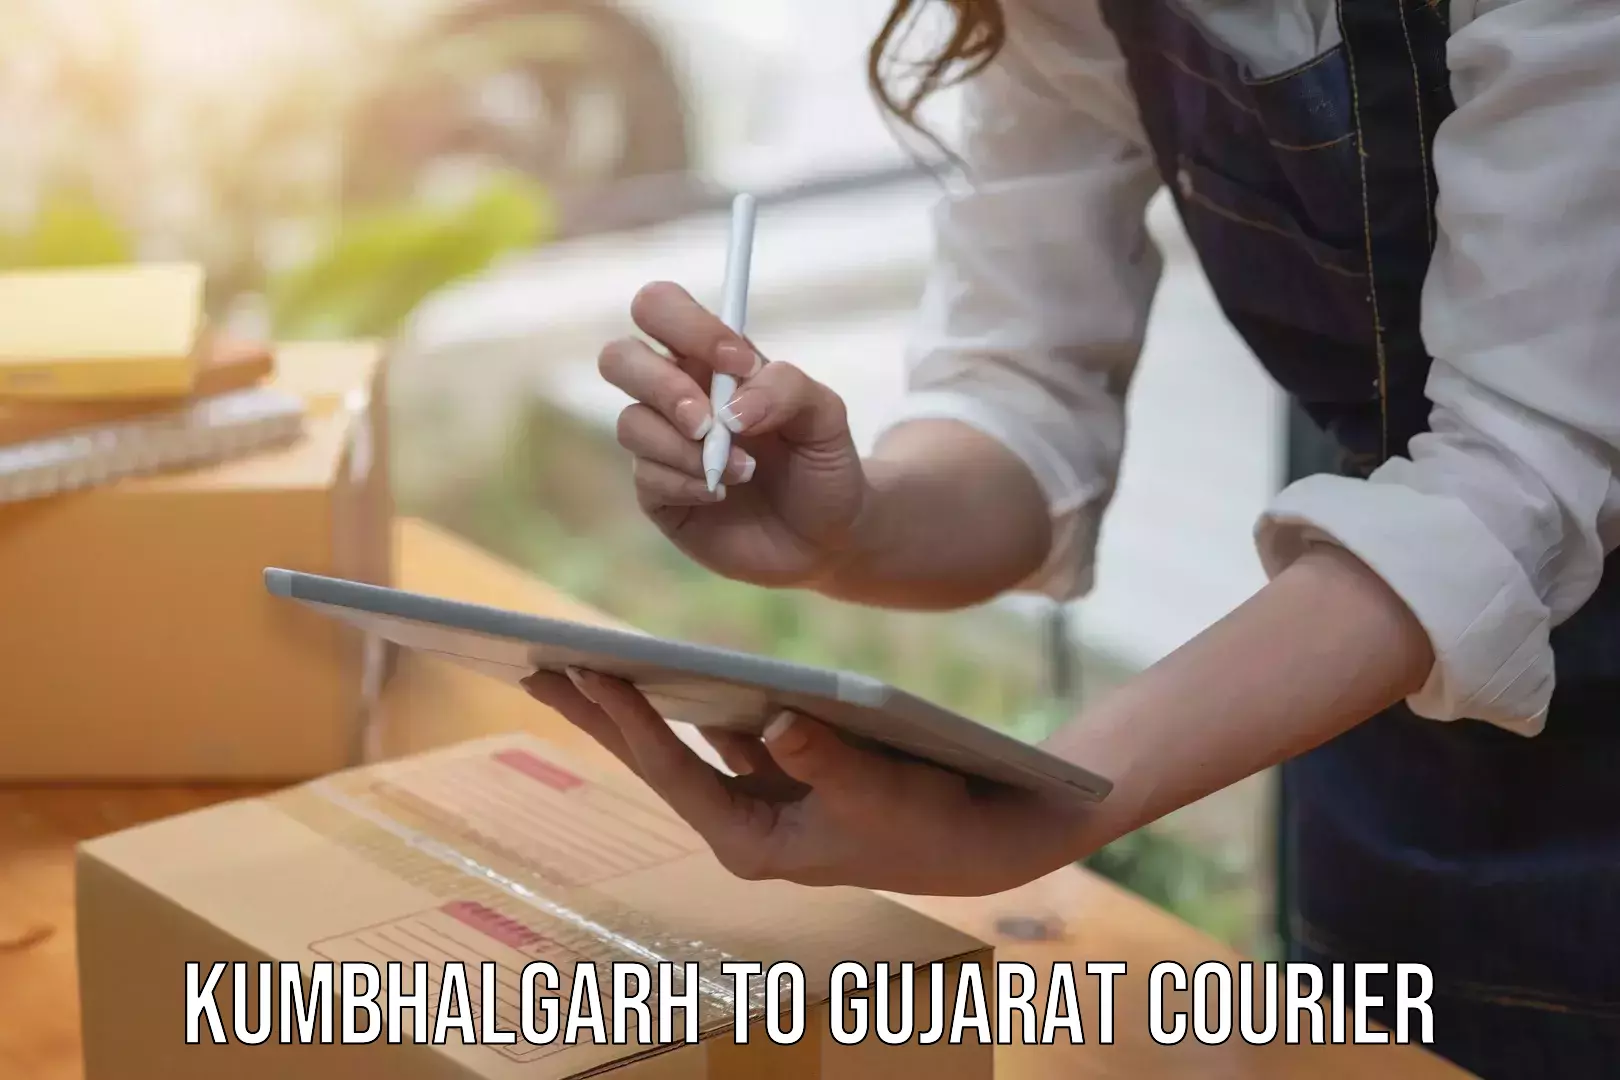 Versatile courier offerings Kumbhalgarh to Gandhinagar